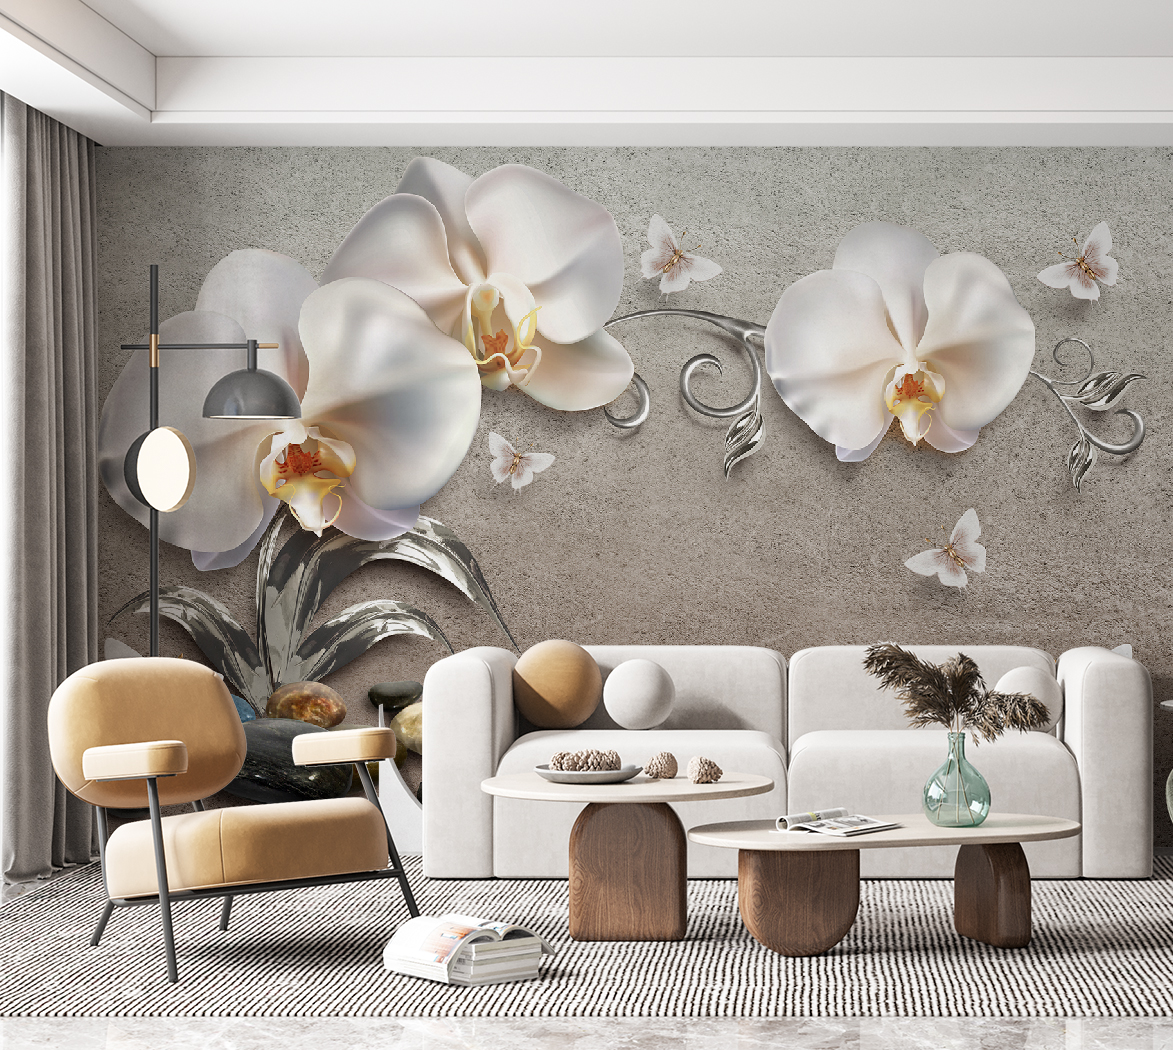 Фотообои Photostena 3D Белые орхидеи 4,08 x 2,65 м ярлыки садовые для маркировки 22 см с маркером набор 8 шт пластик белые